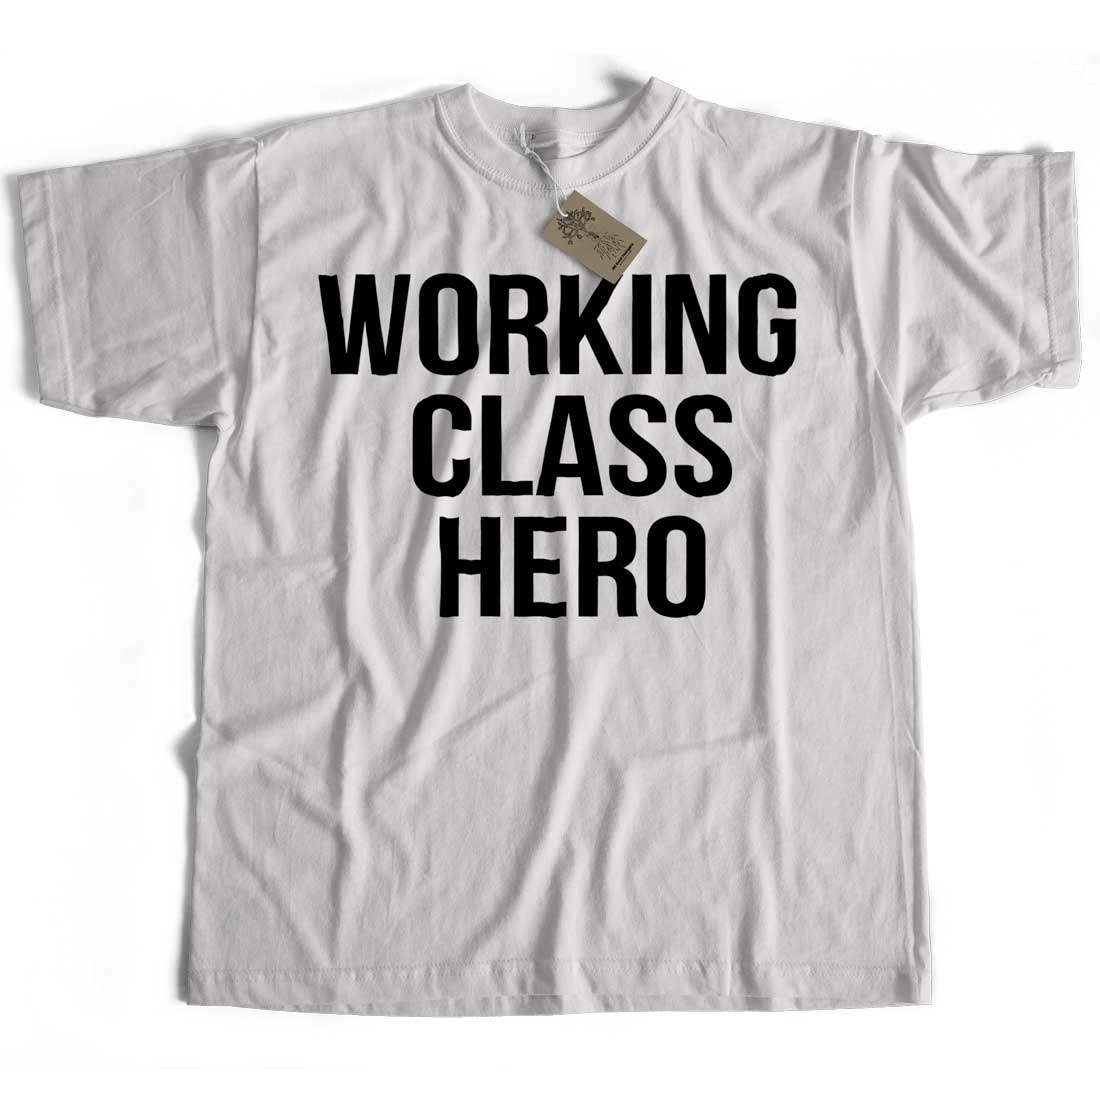 As Worn by John Lennon T shirt - Working Class Hero